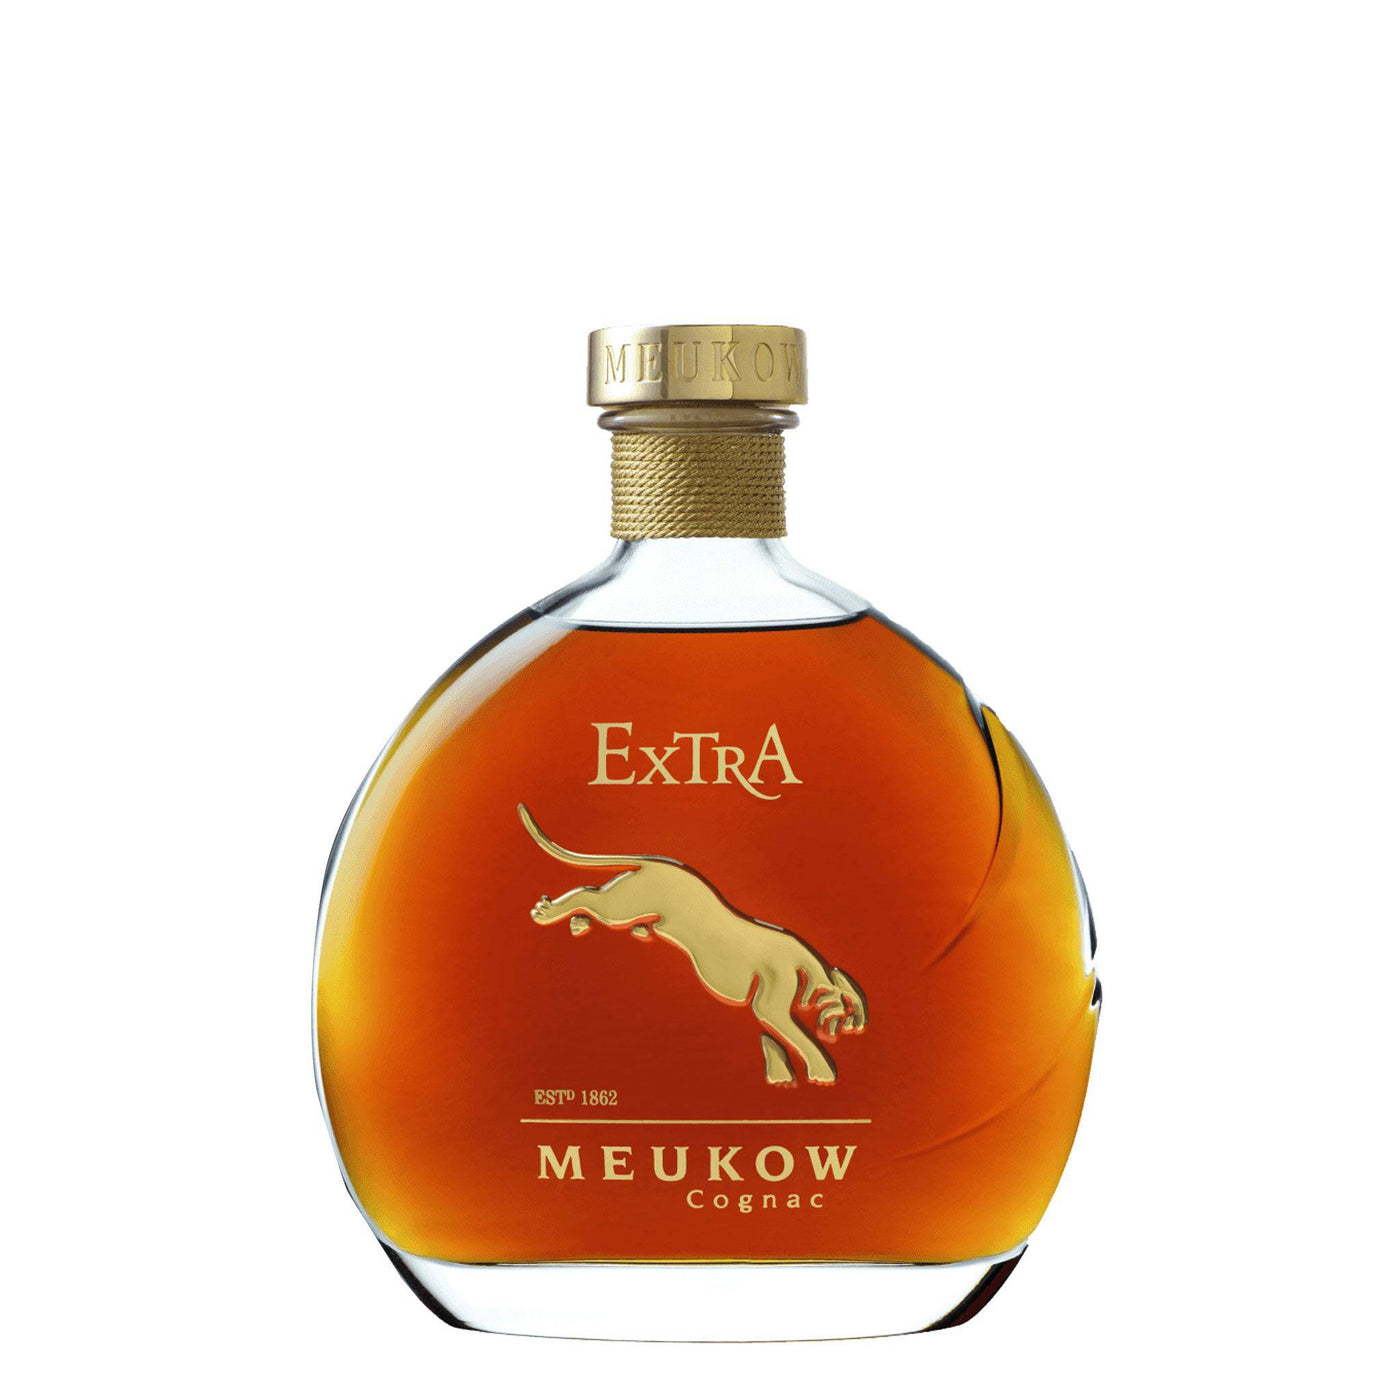 Meukow Extra Cognac - Spiritly